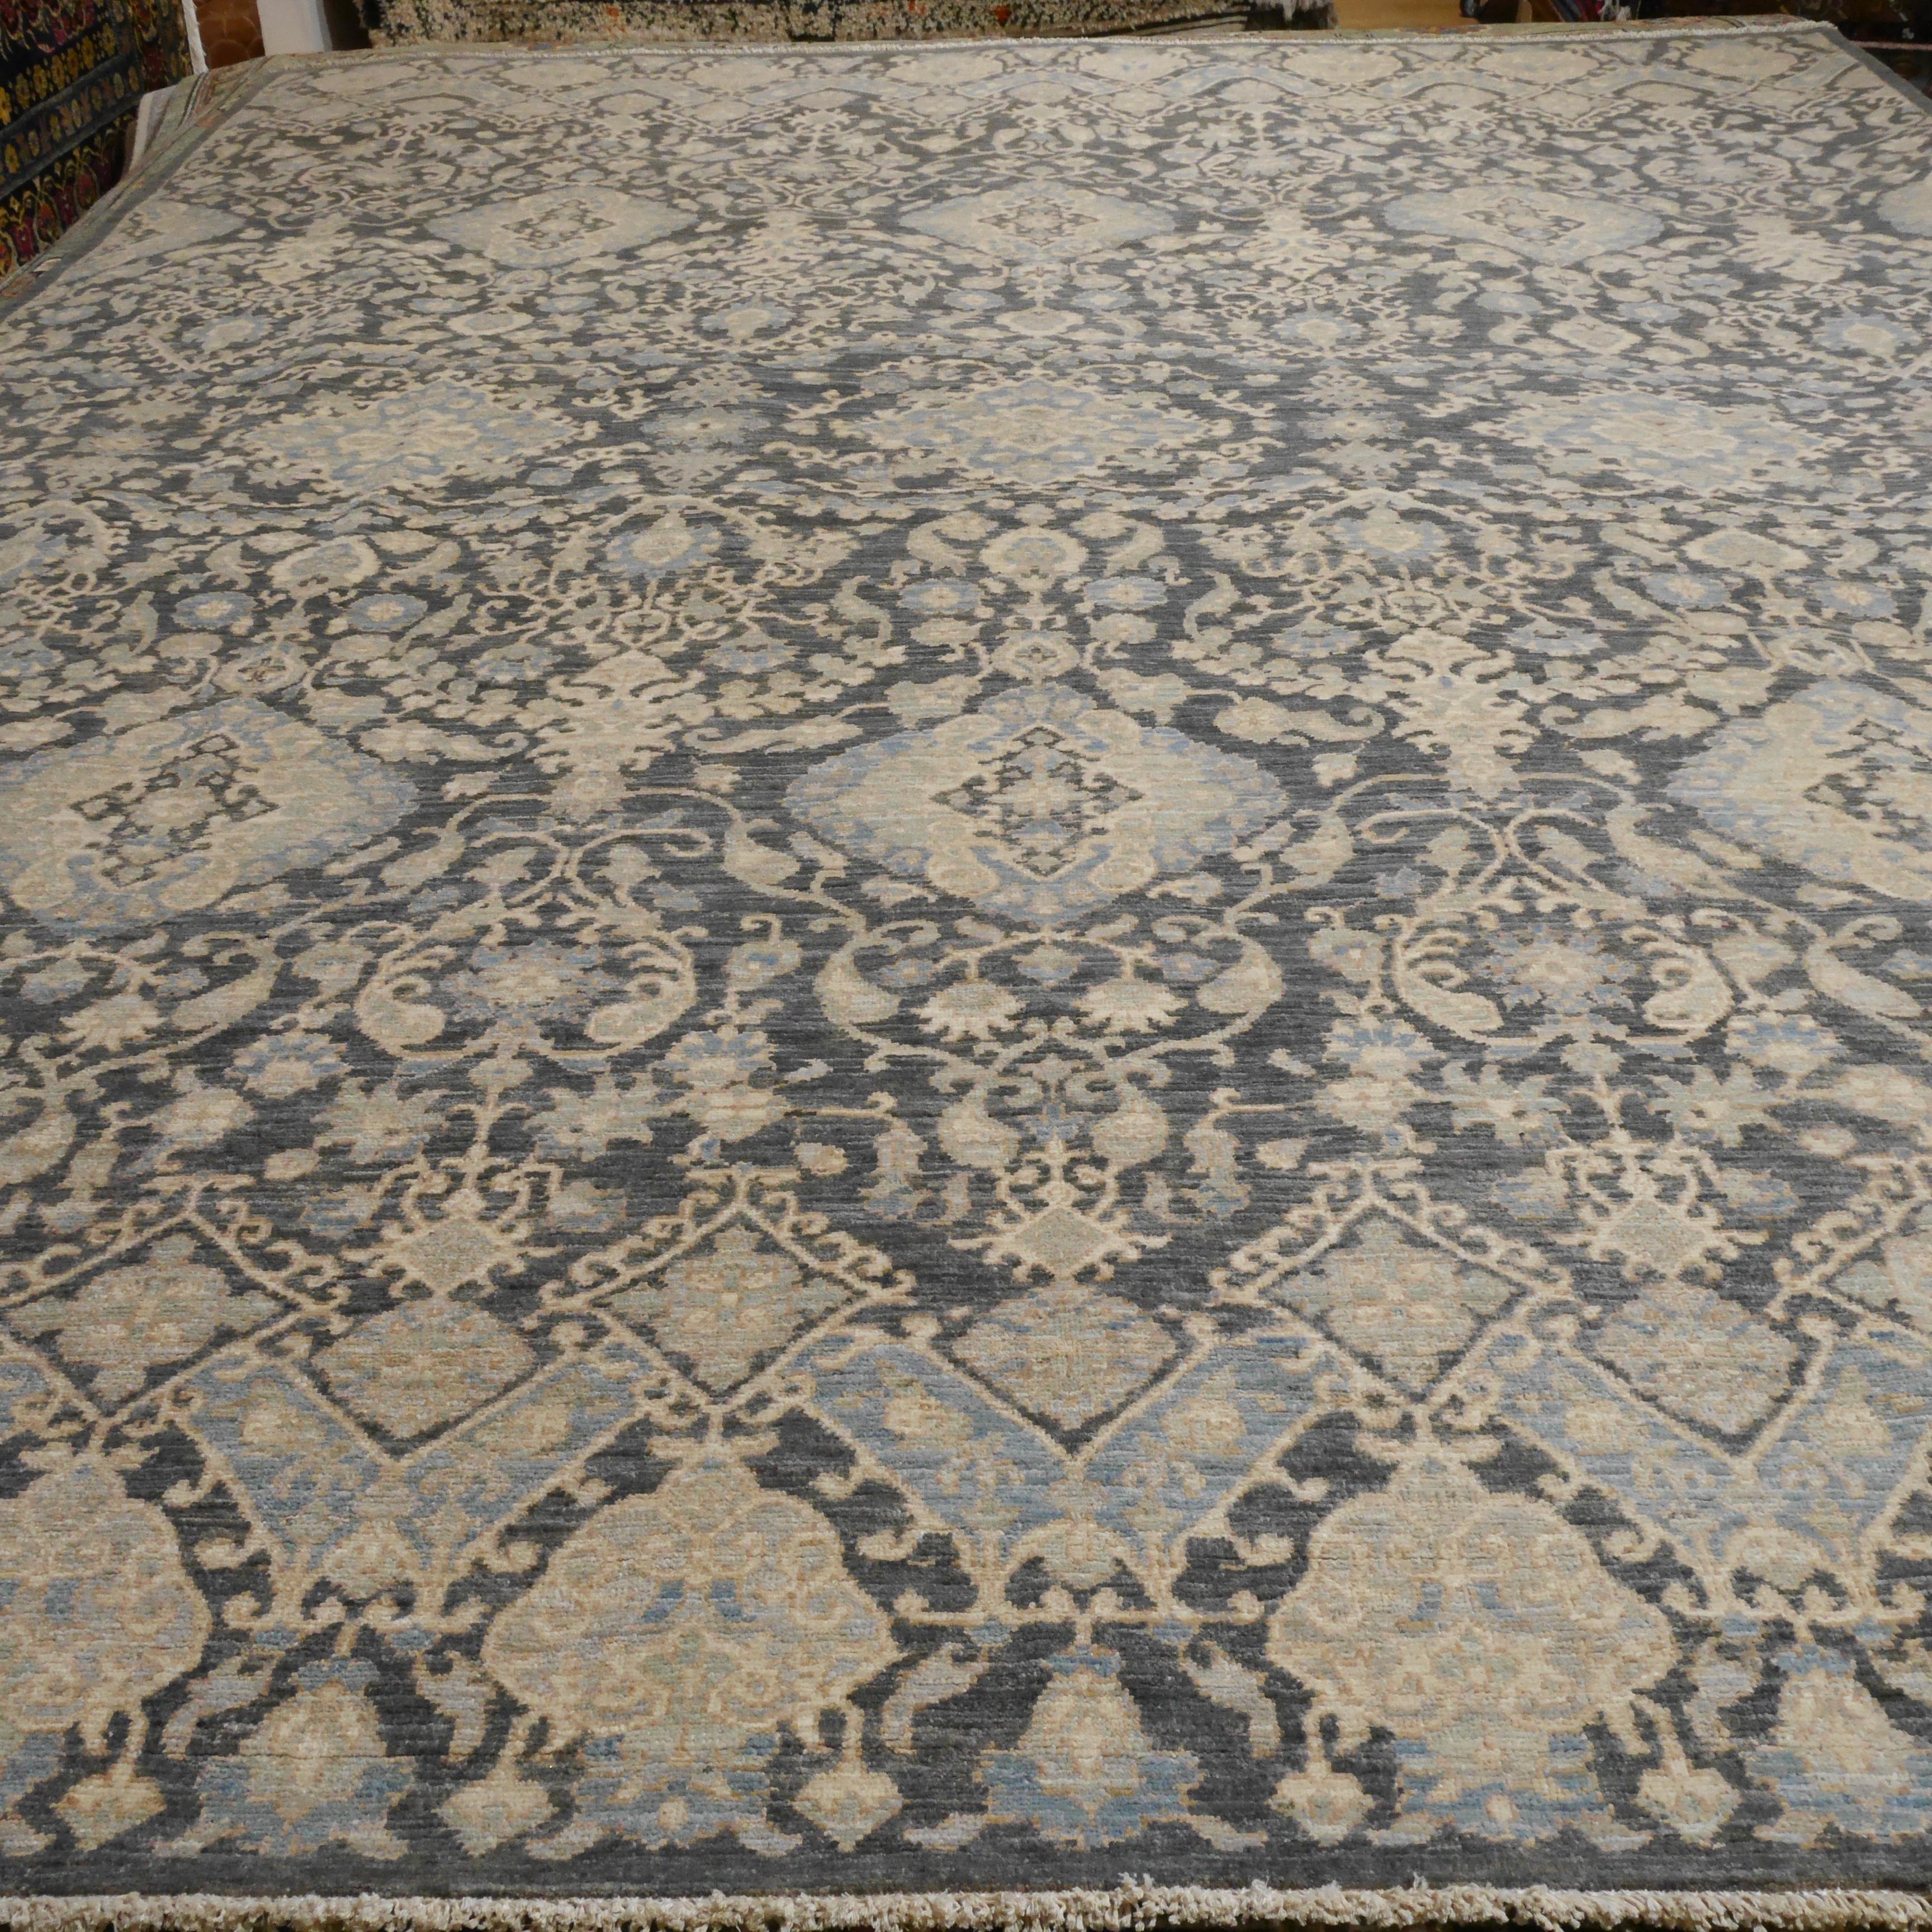 Ein großer zimmergroßer Teppich mit Design im Stil von Agra.
Dieser schöne Teppich wurde von Hand geknüpft, um den Anforderungen des 21. Jahrhunderts gerecht zu werden. Der Hintergrund ist in einer eleganten grauen Farbe mit orientalischen Mustern